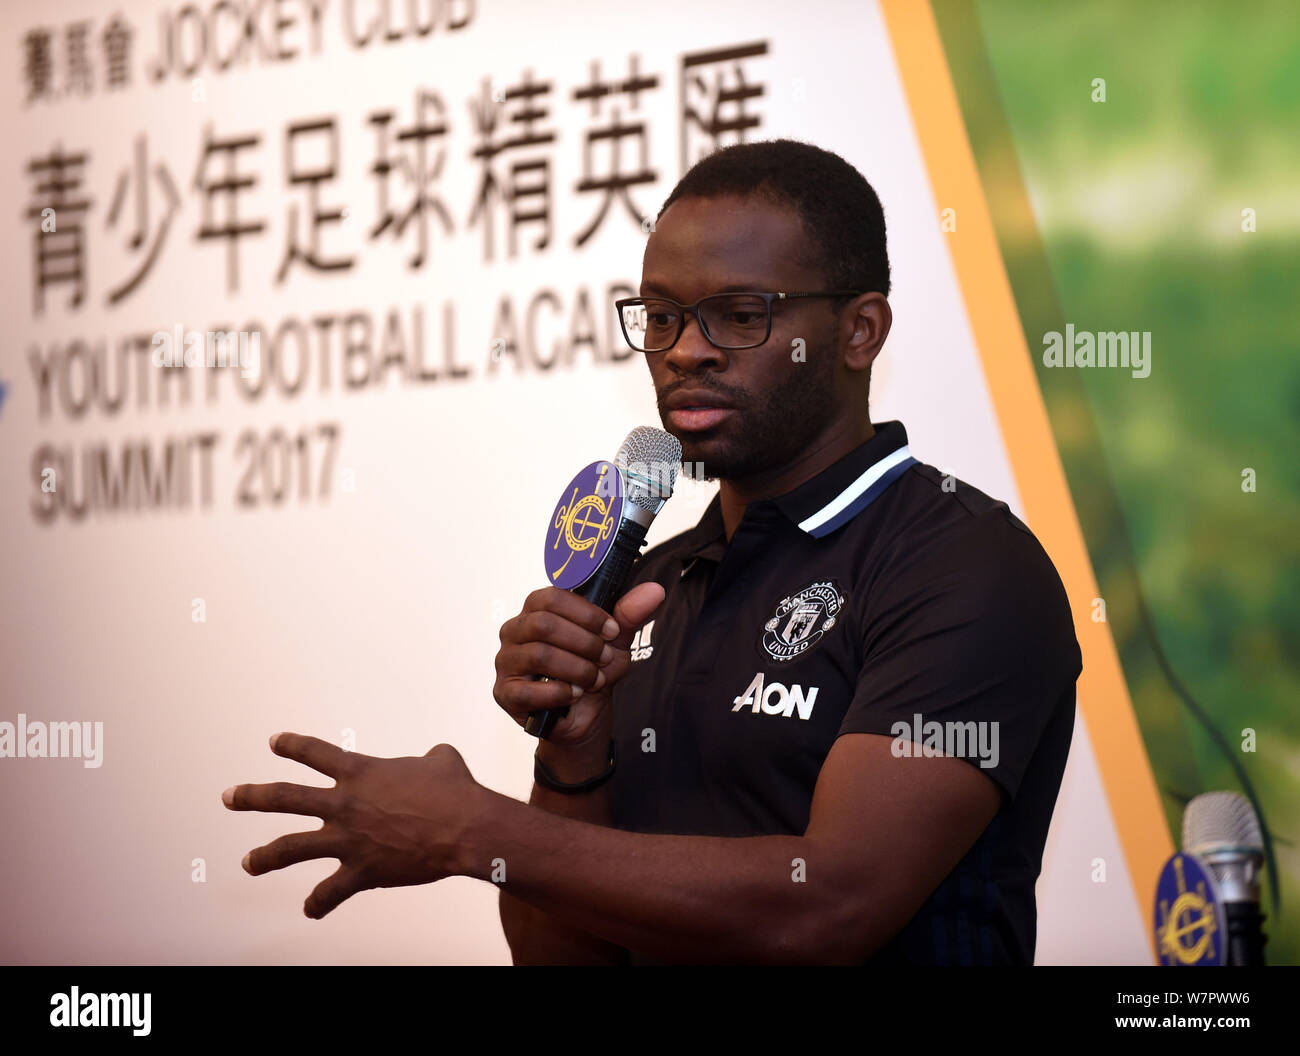 Ancien joueur de football français Louis Saha parle lors d'une conférence de presse pour la jeunesse du Sommet 2017 de l'Académie de football à Hong Kong, Chine, 21 juin 2017. Banque D'Images